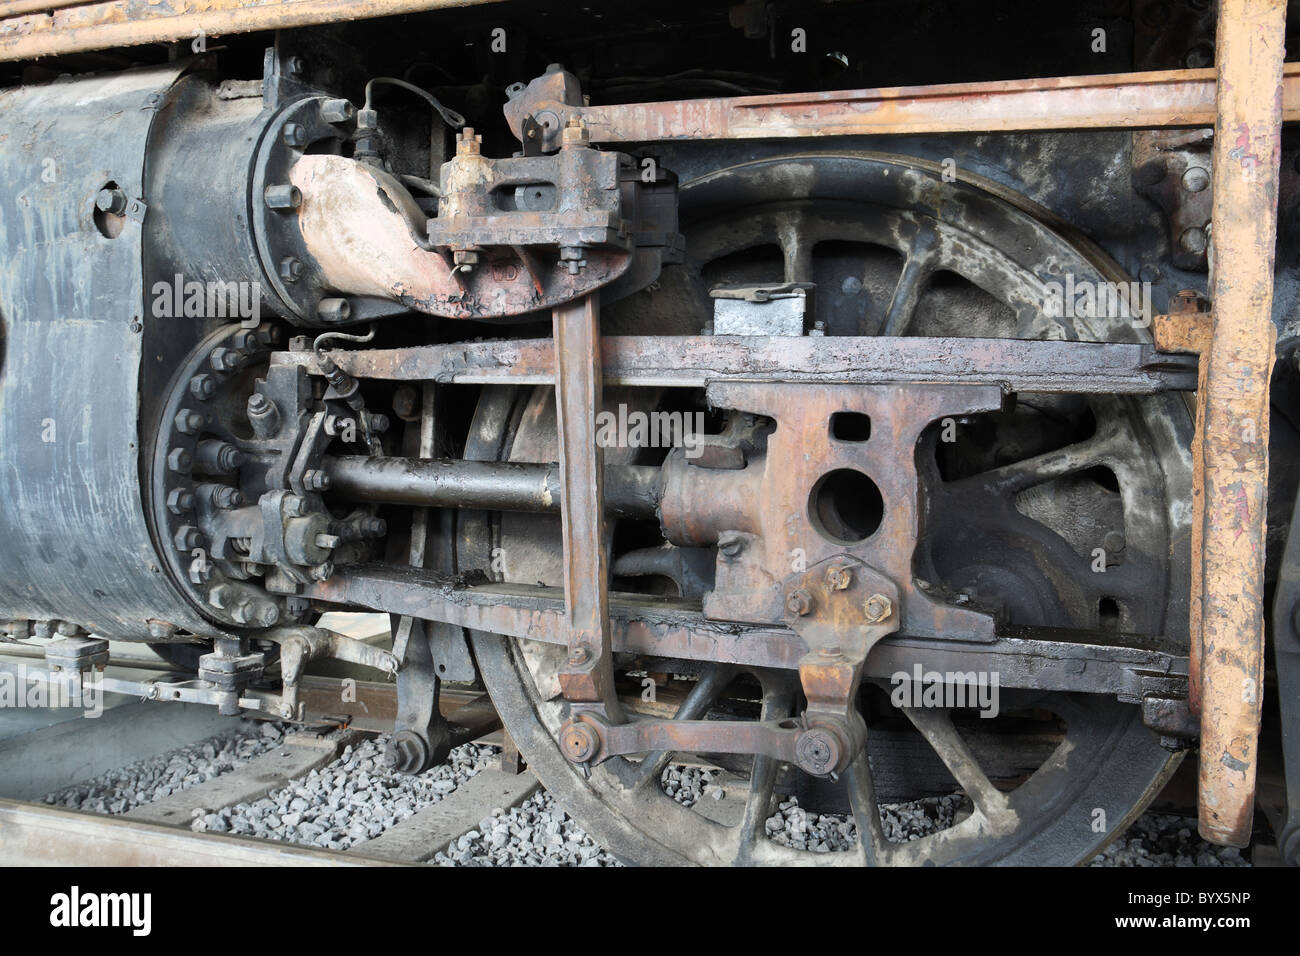 La traverse et cylindre d'une locomotive à vapeur britannique rapatriés de Turquie. Musée national du chemin de fer, Shildon site, ne l'Angleterre. Banque D'Images